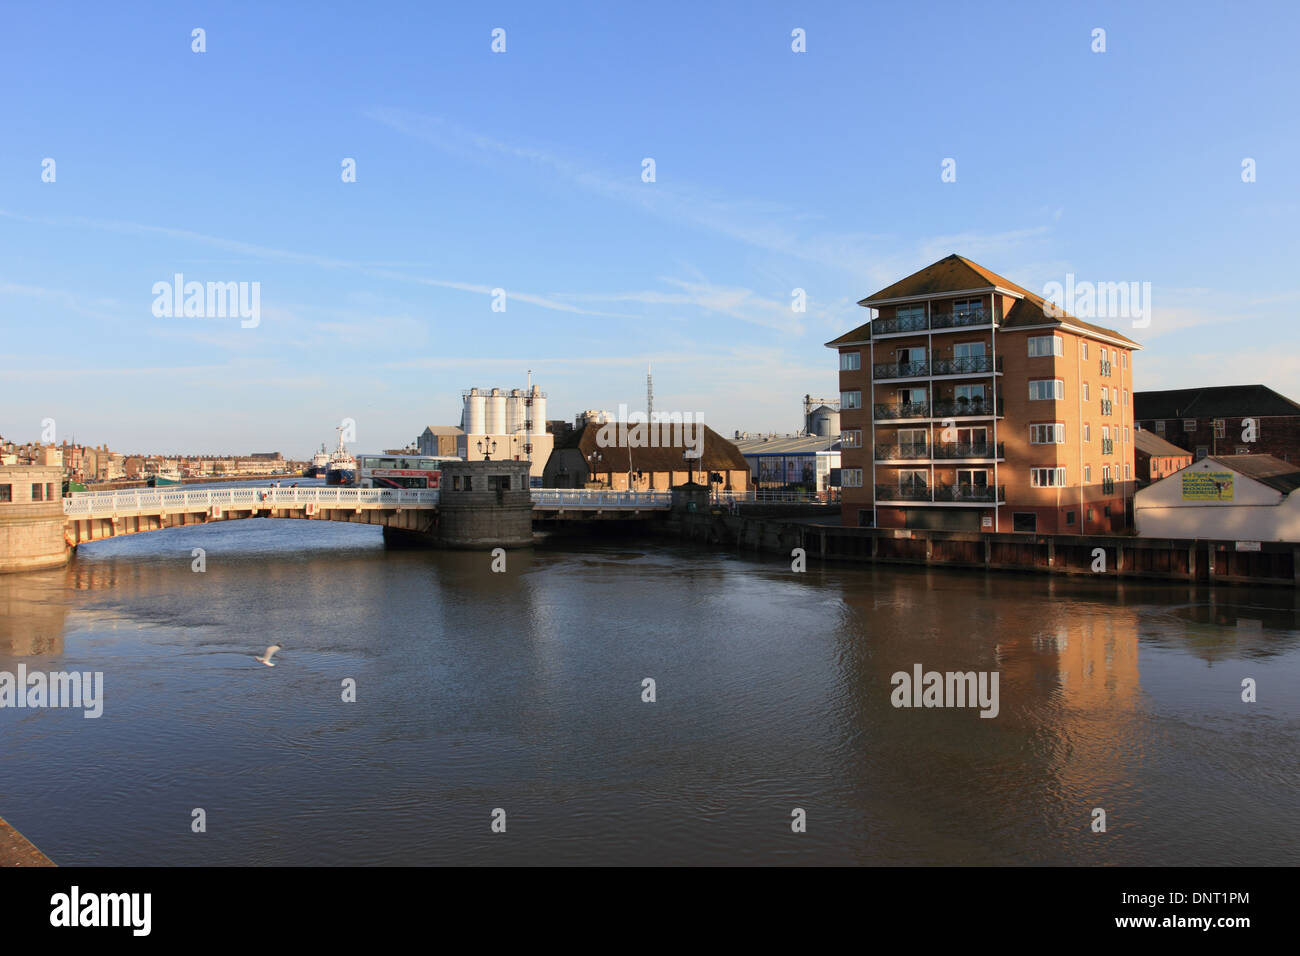 Hafen Sie, Brücke, yare River, Fluss Kai hohes Gebäude neben Fluss, great Yarmouth, Norfolk, Großbritannien Stockfoto